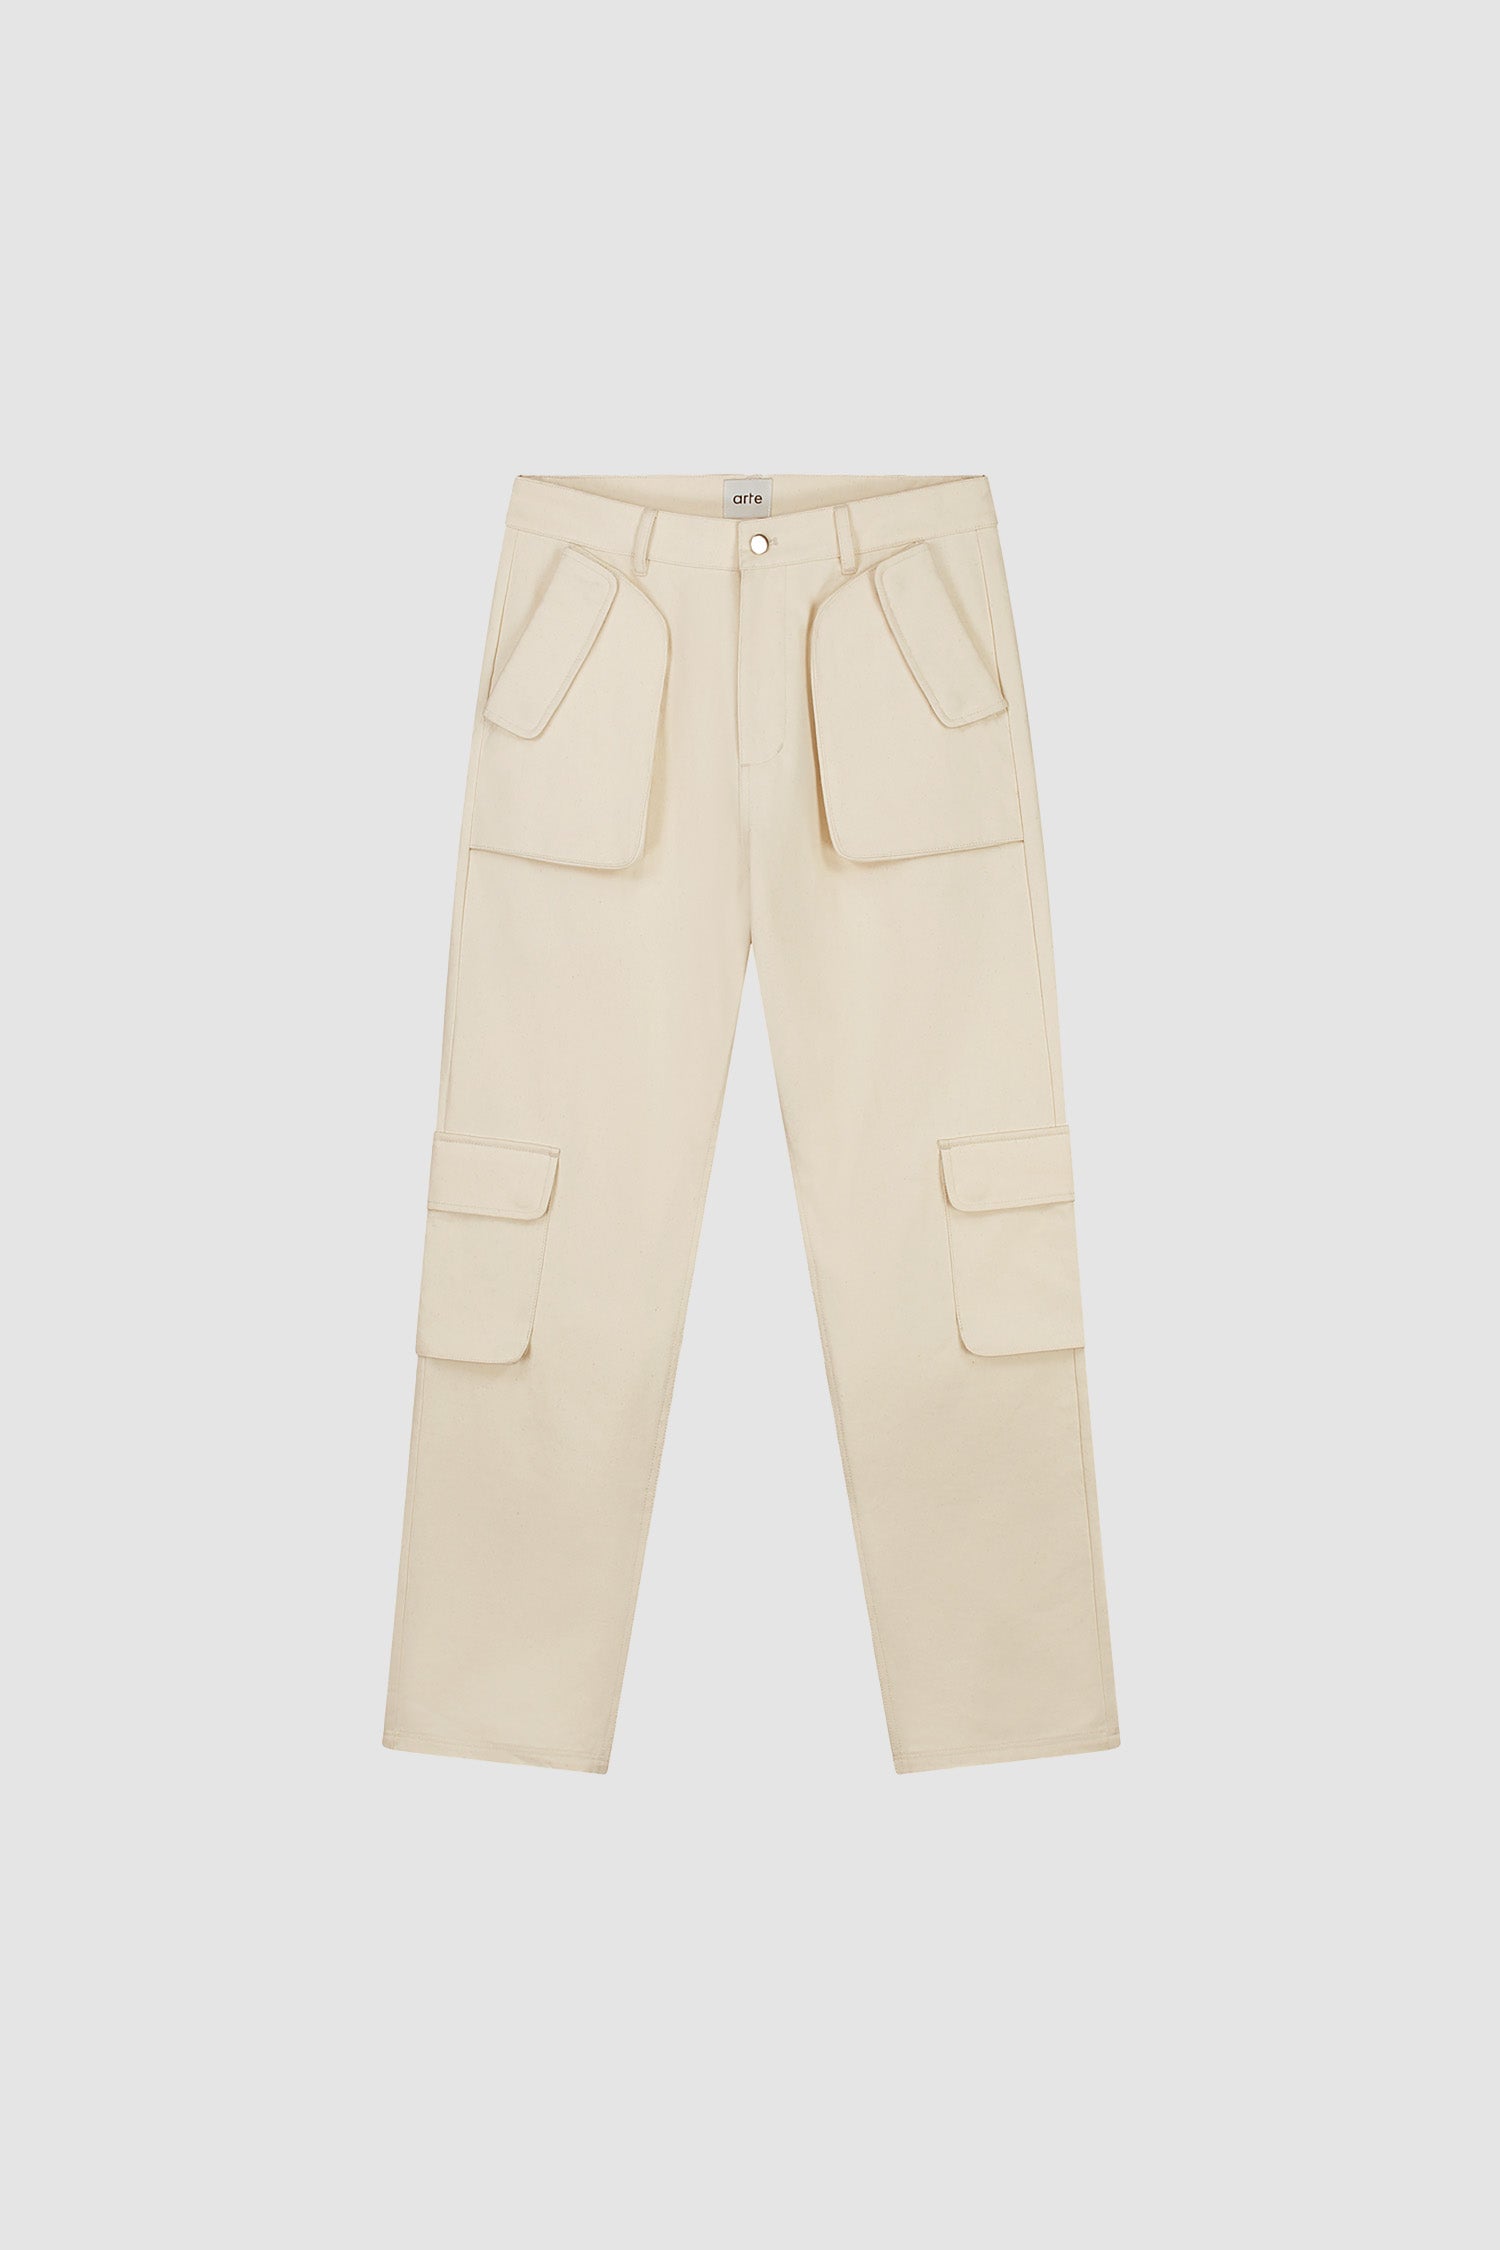 Jaden Cargo Pants - Cream